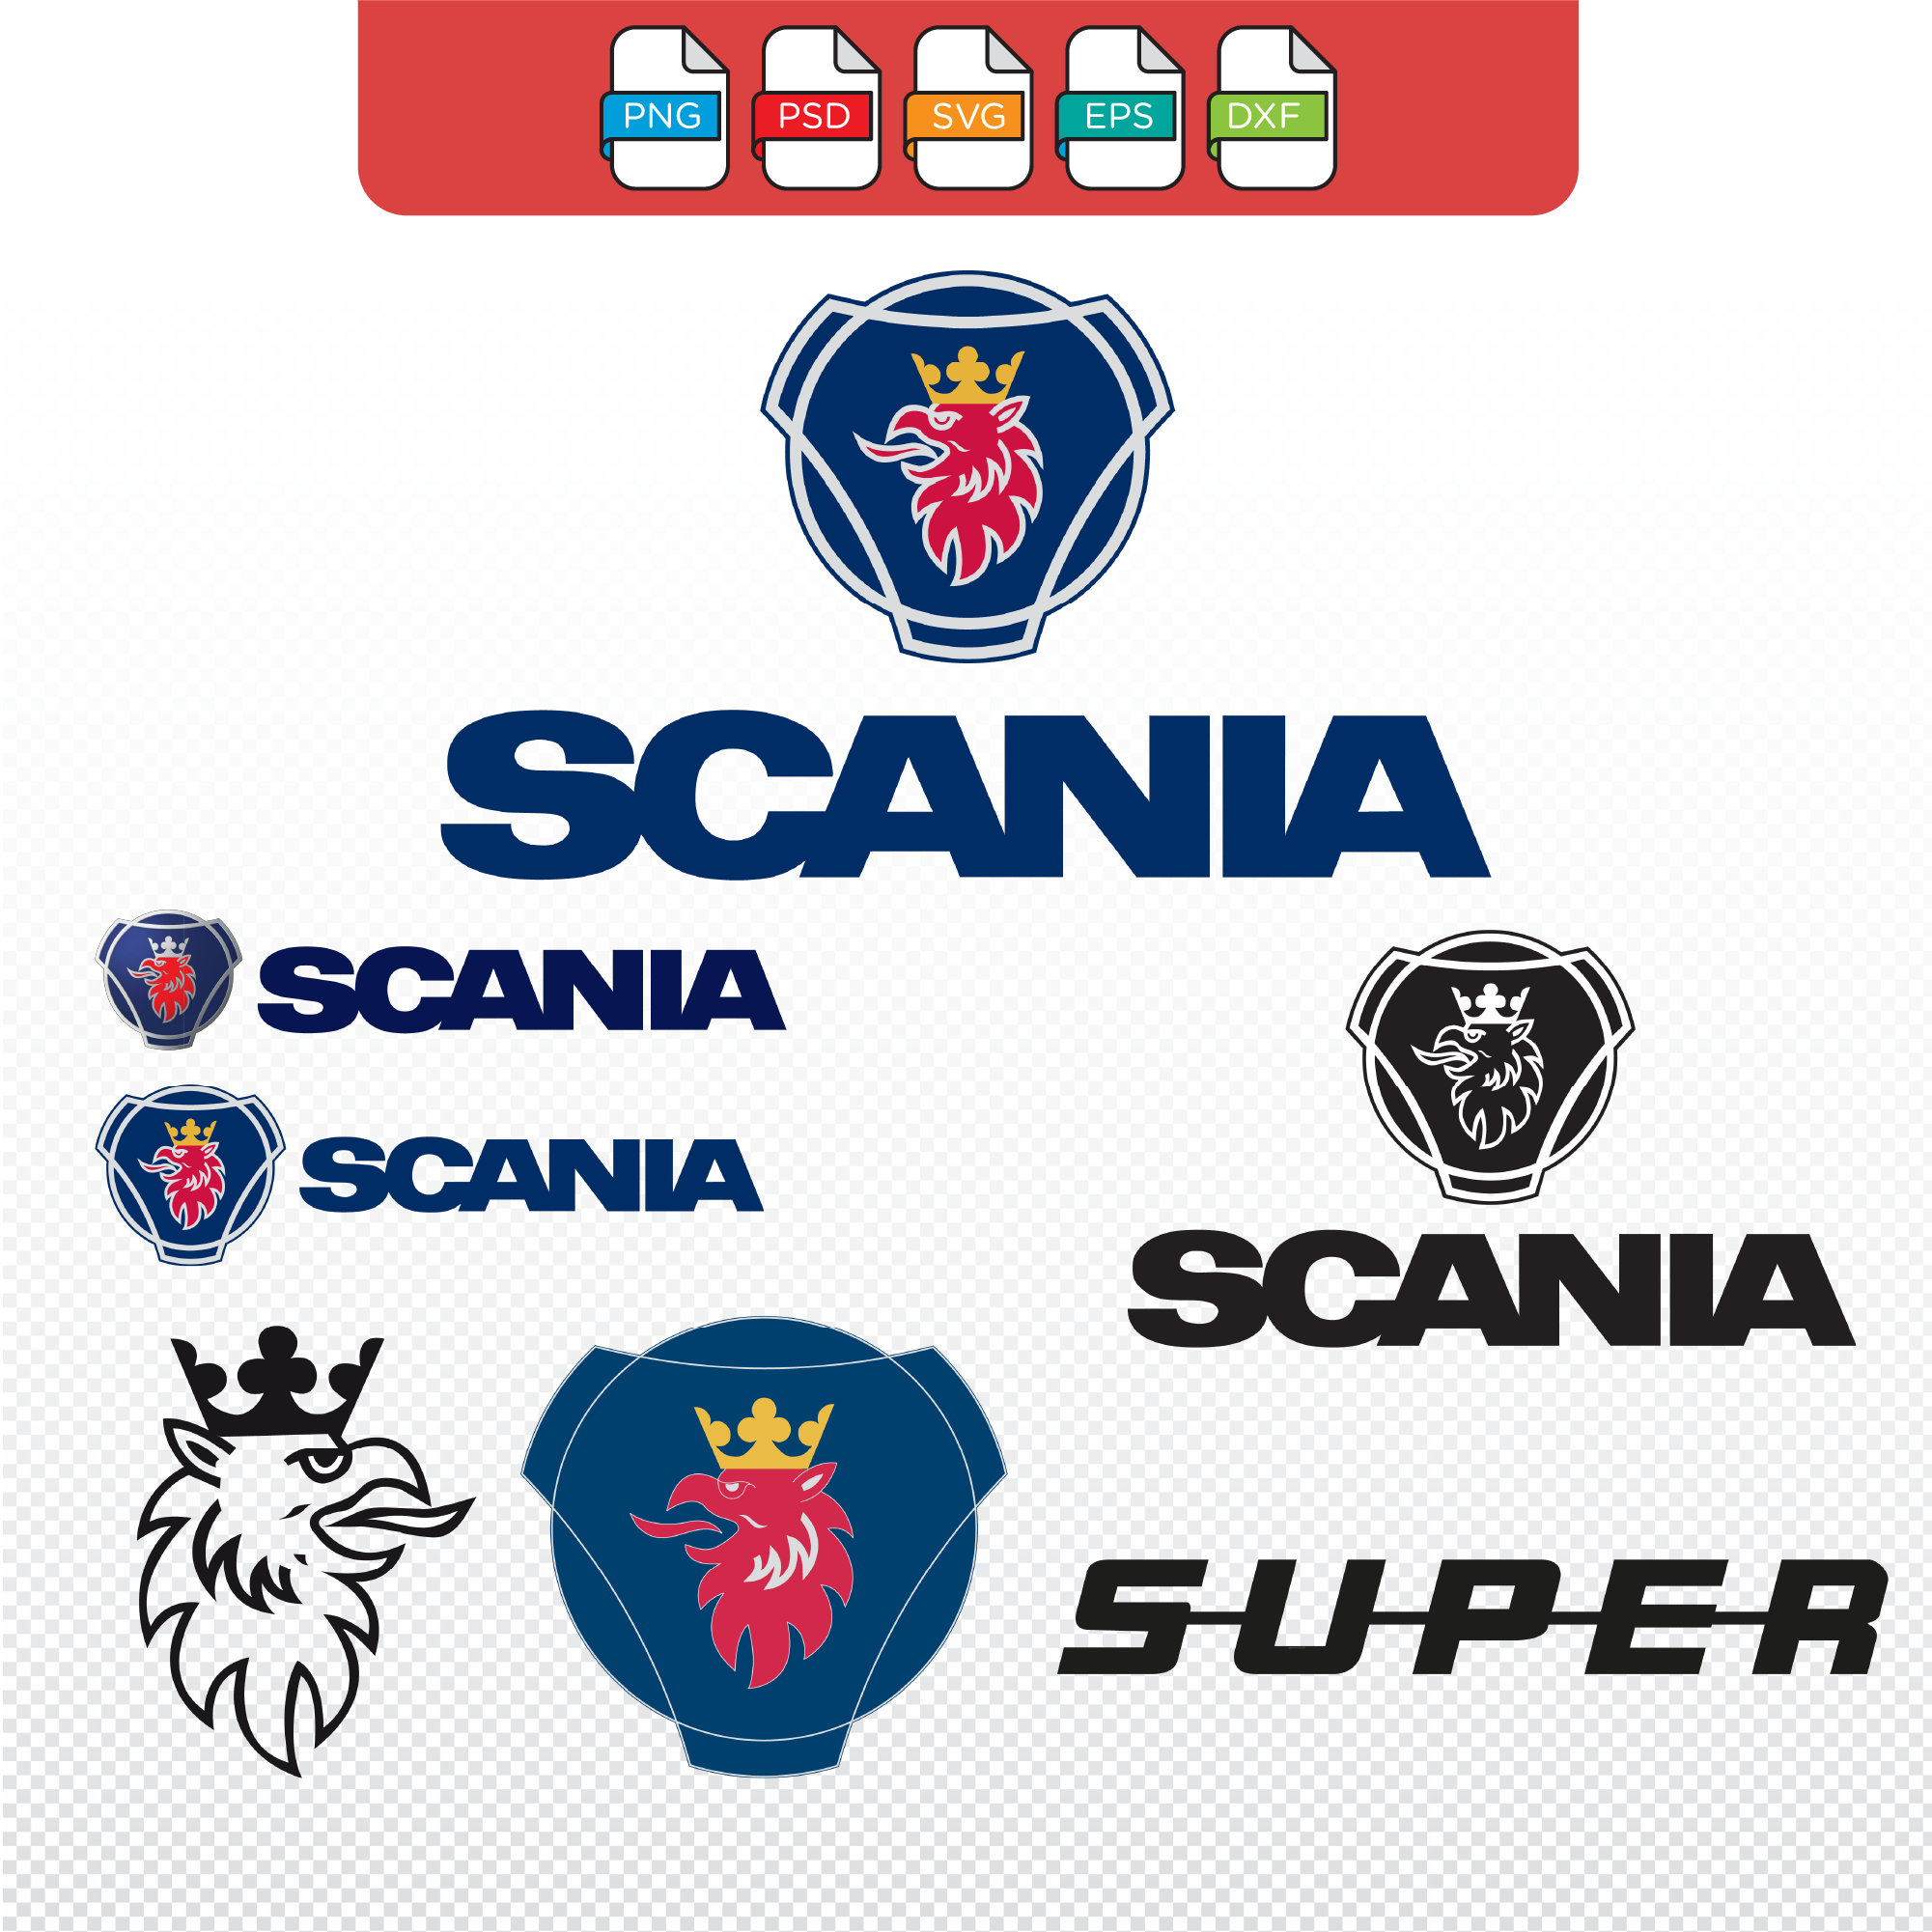 Veste scania personnalisée en coton doublée polaire, style vintage, Scania,  logo Scania, veste Scania -  France